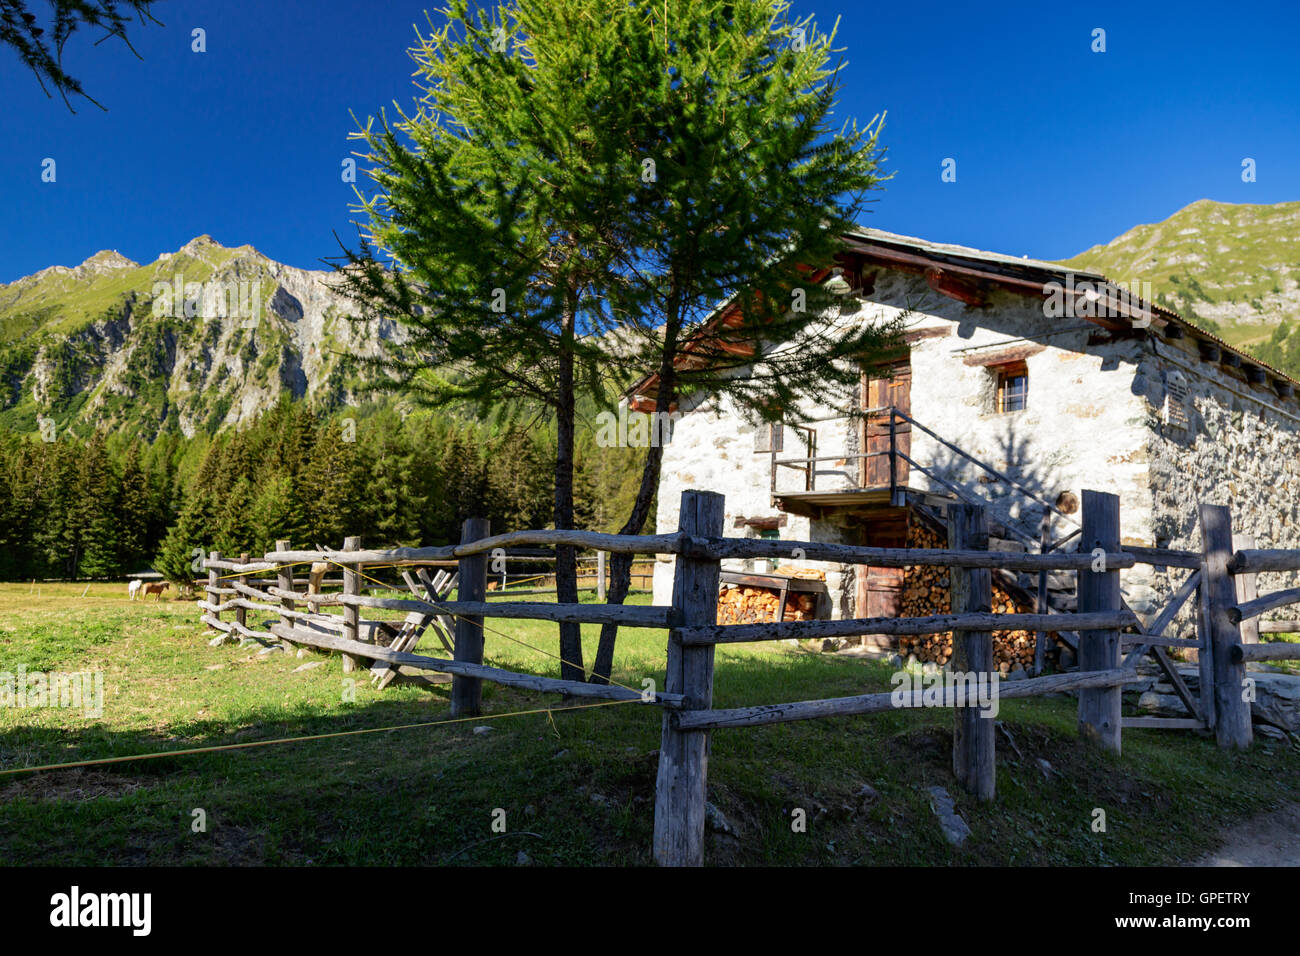 Vue panoramique sur la pittoresque maison du ranch de montagnes et d'avoir une clôture en bois artisanal rustique Banque D'Images